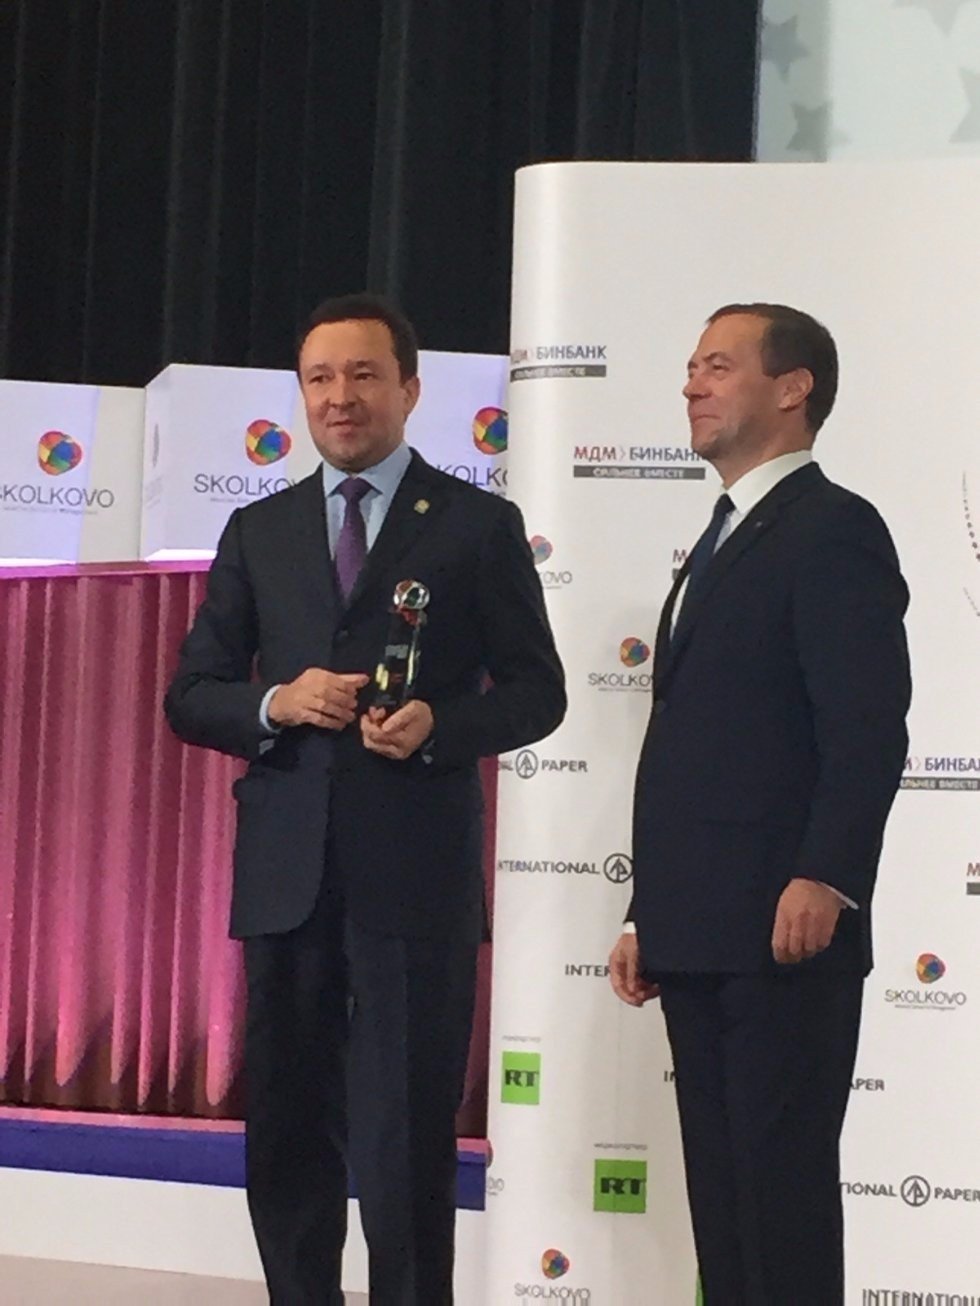 Republic of Tatarstan Receives SKOLKOVO Trend Award for Educational Program Implemented by Kazan University